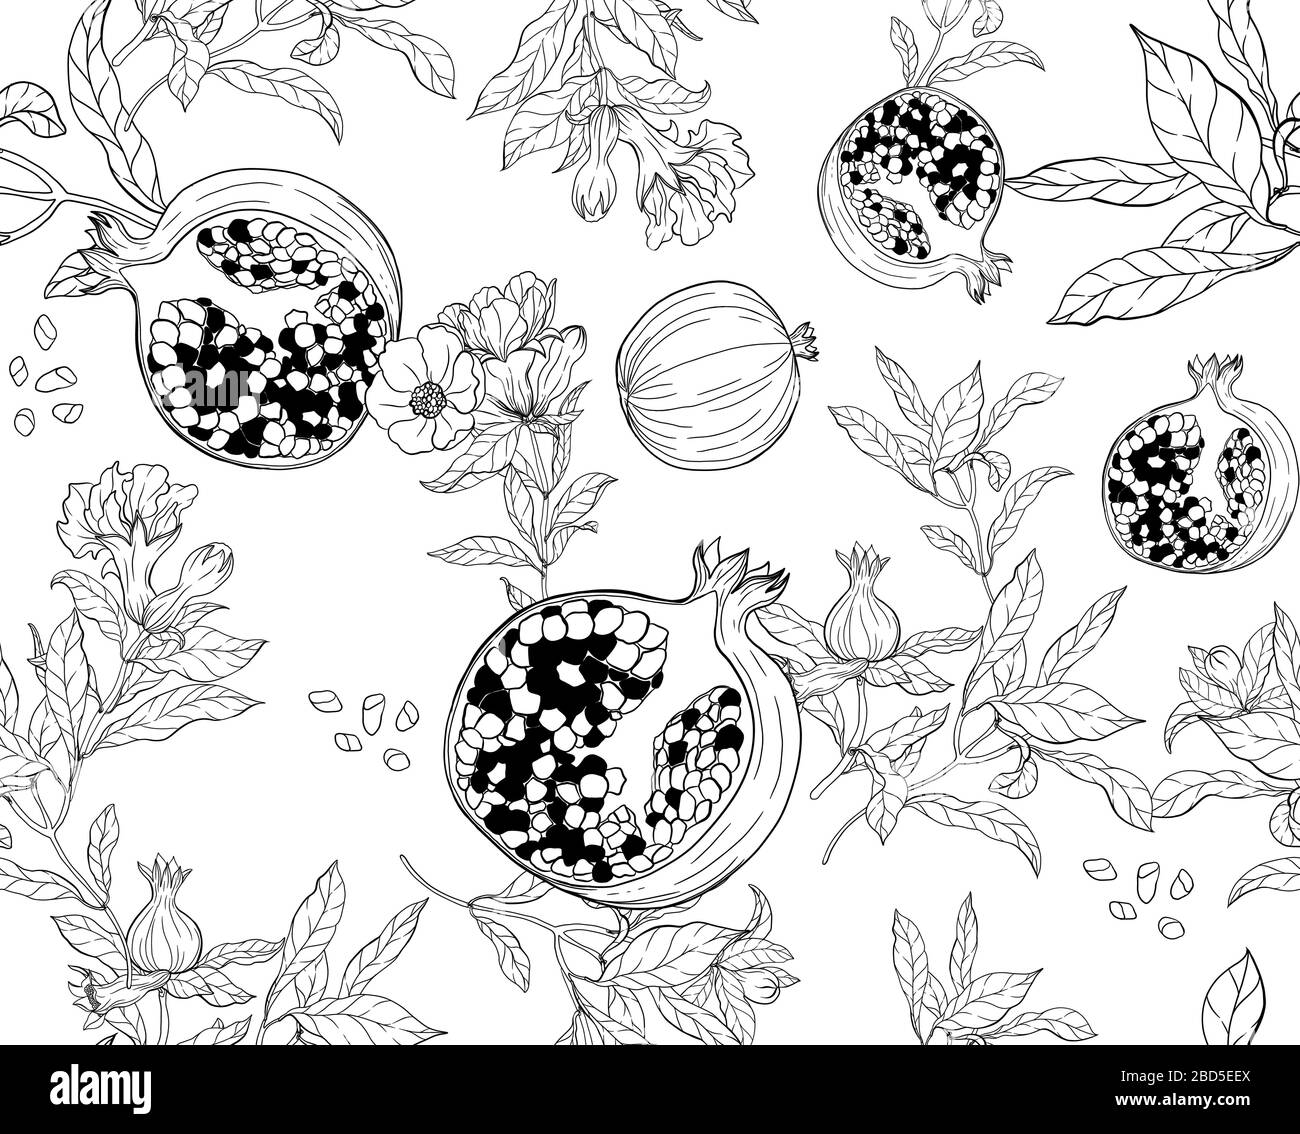 Vektor nahtloses Muster mit Granatapfeln und Samen auf weißem Hintergrund. Design für Kosmetik, Spa, Granatapfelsaft und Gesundheitsprodukte Stock Vektor